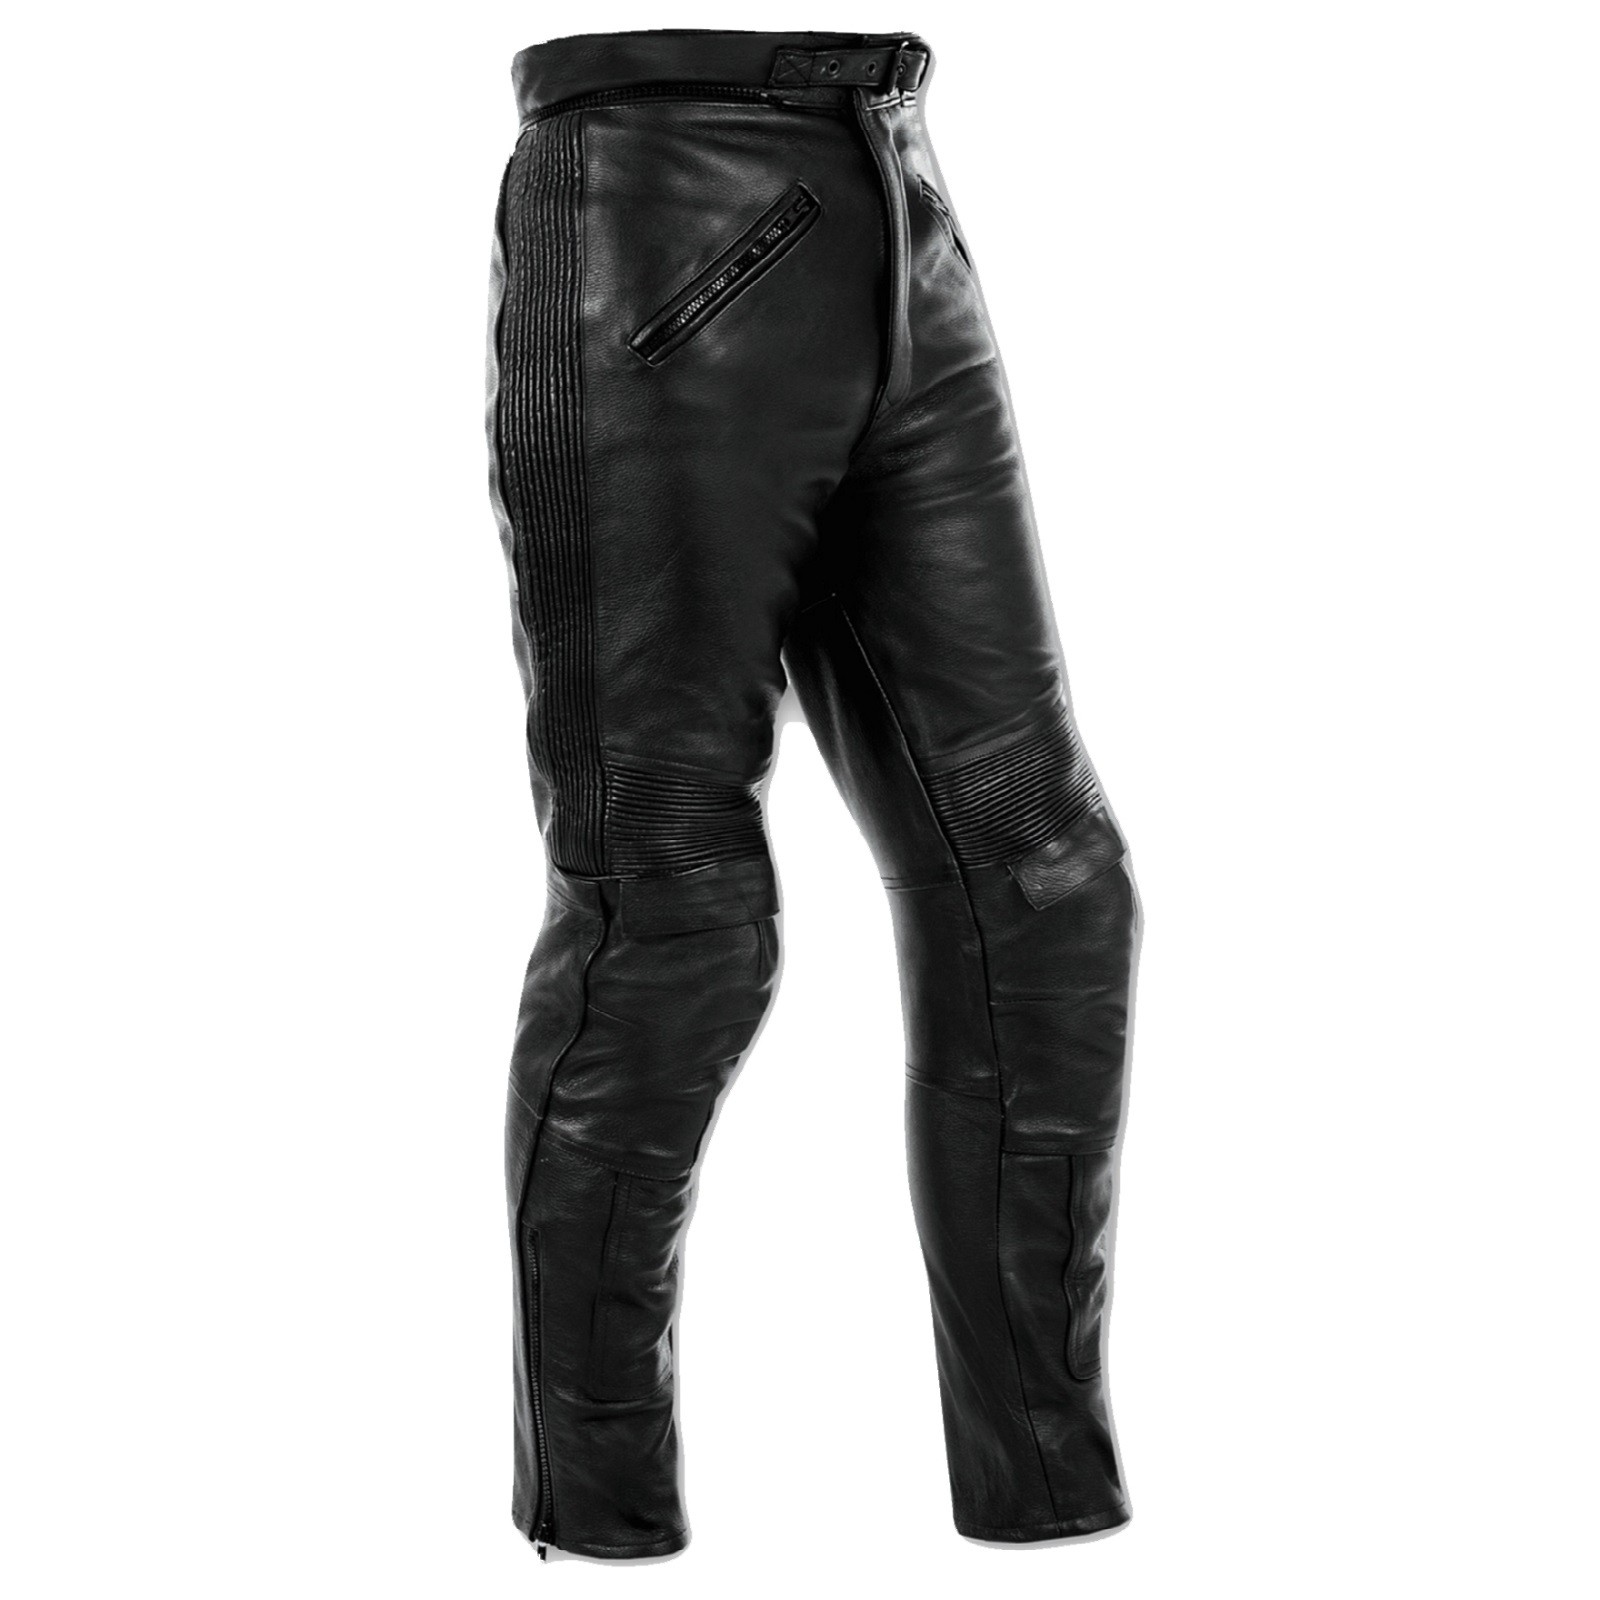 Abbigliamento Moto e Accessori - Pantaloni Pelle Moto Sport Touring Custom  Protezioni Omologate CE Uomo Donna